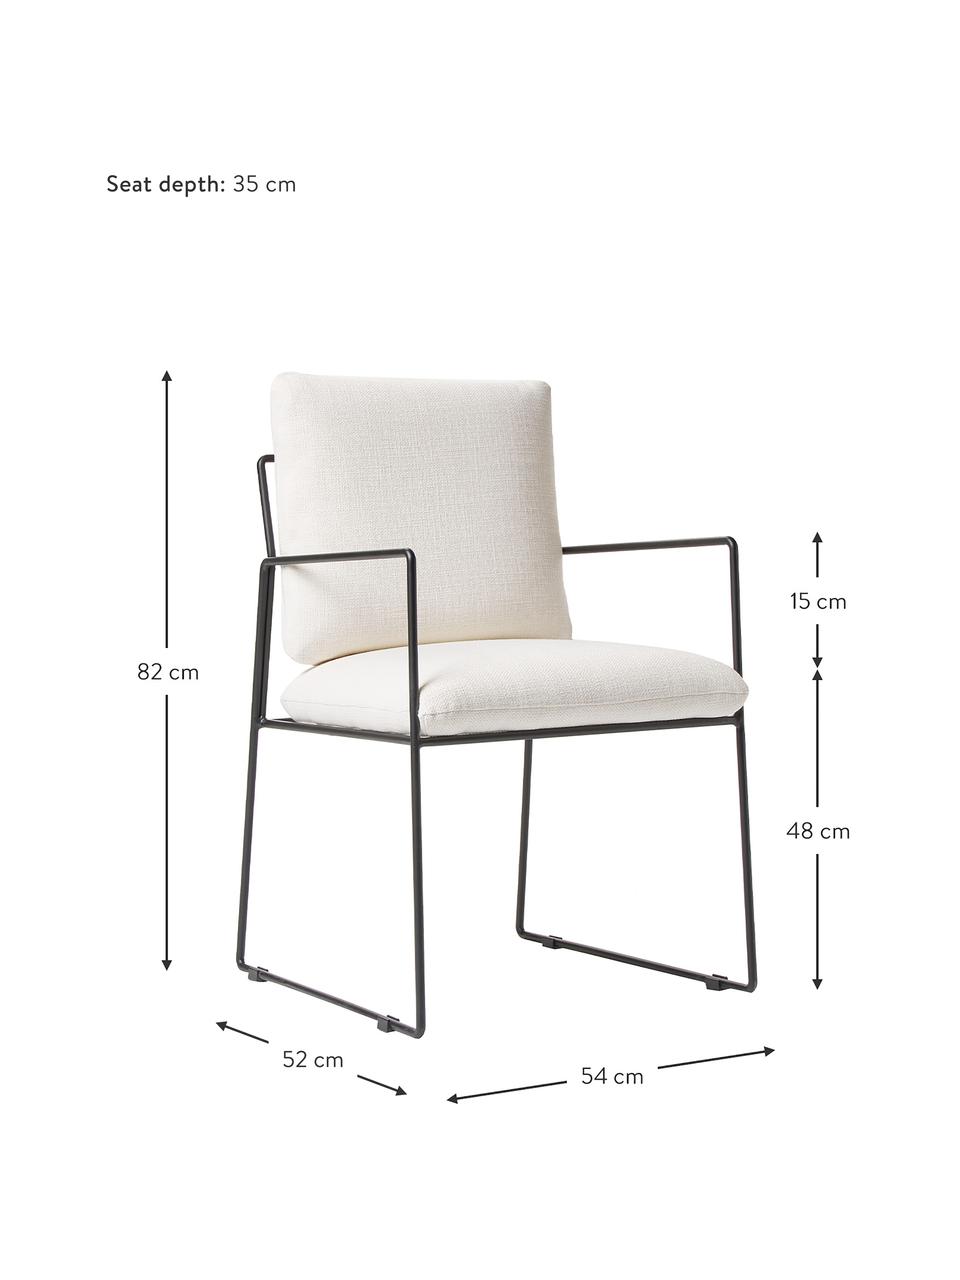 Krzesło tapicerowane z metalowym stelażem Wayne, Tapicerka: 97% poliester, 3% len Dzi, Stelaż: metal malowany proszkowo, Biała tkanina, S 54 x G 52 cm